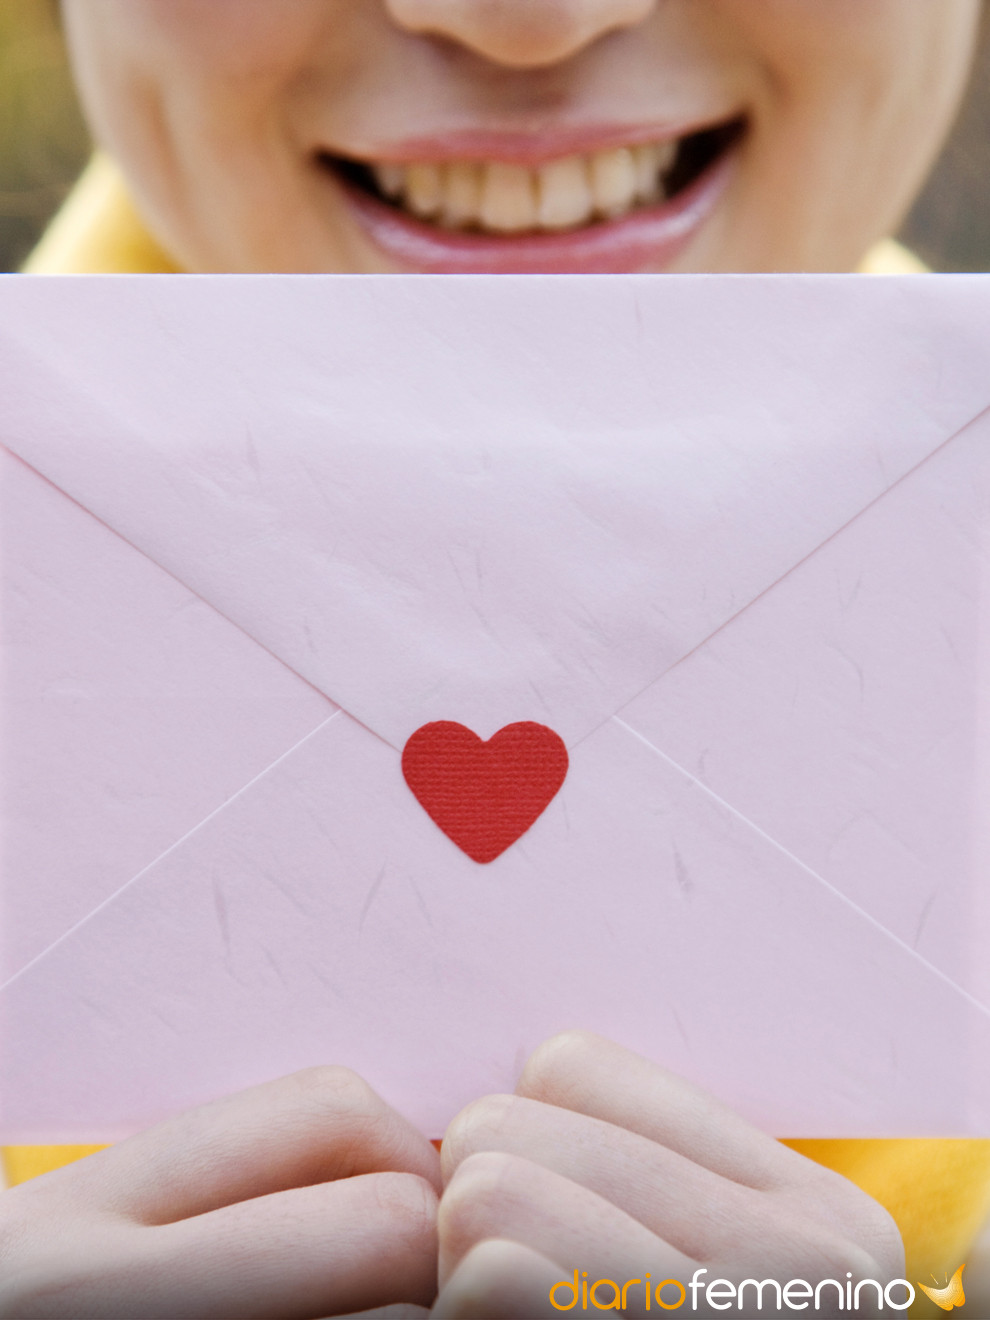 Cartas de amor para celebrar 1 año de novios: textos de aniversario